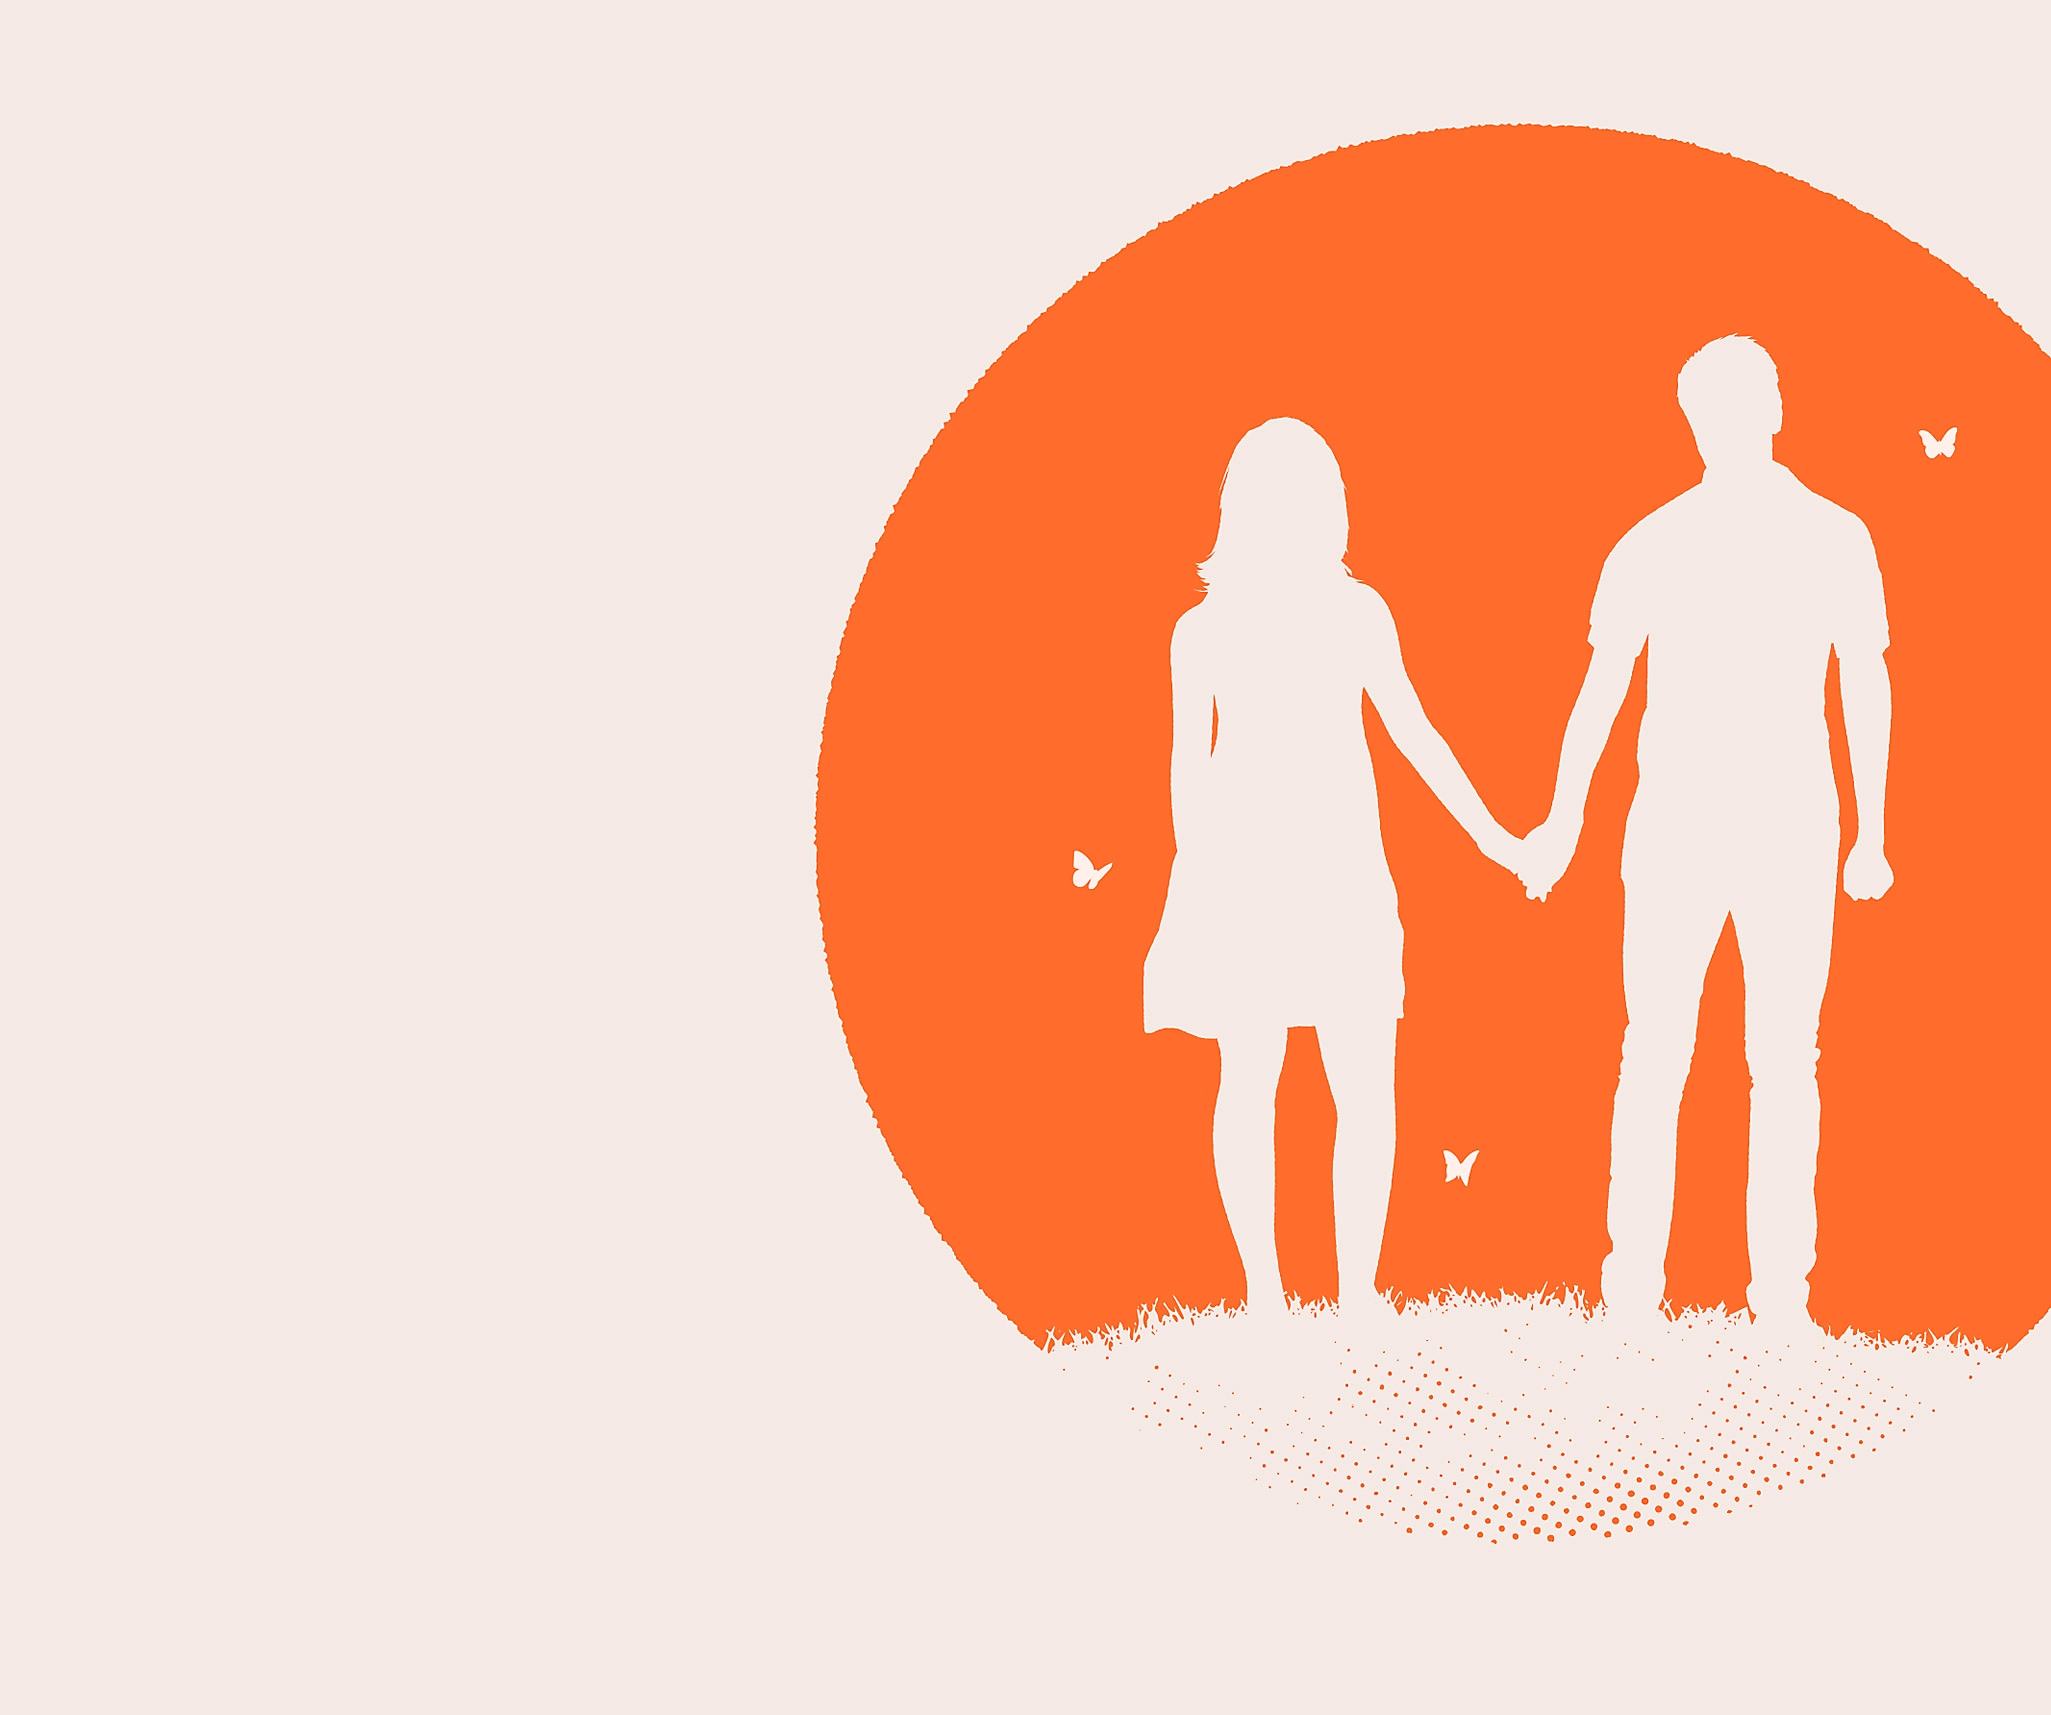 Arte guía de Everybody's Gone to the Rapture que presenta las siluetas de un hombre y una mujer en blanco frente a un círculo naranja.